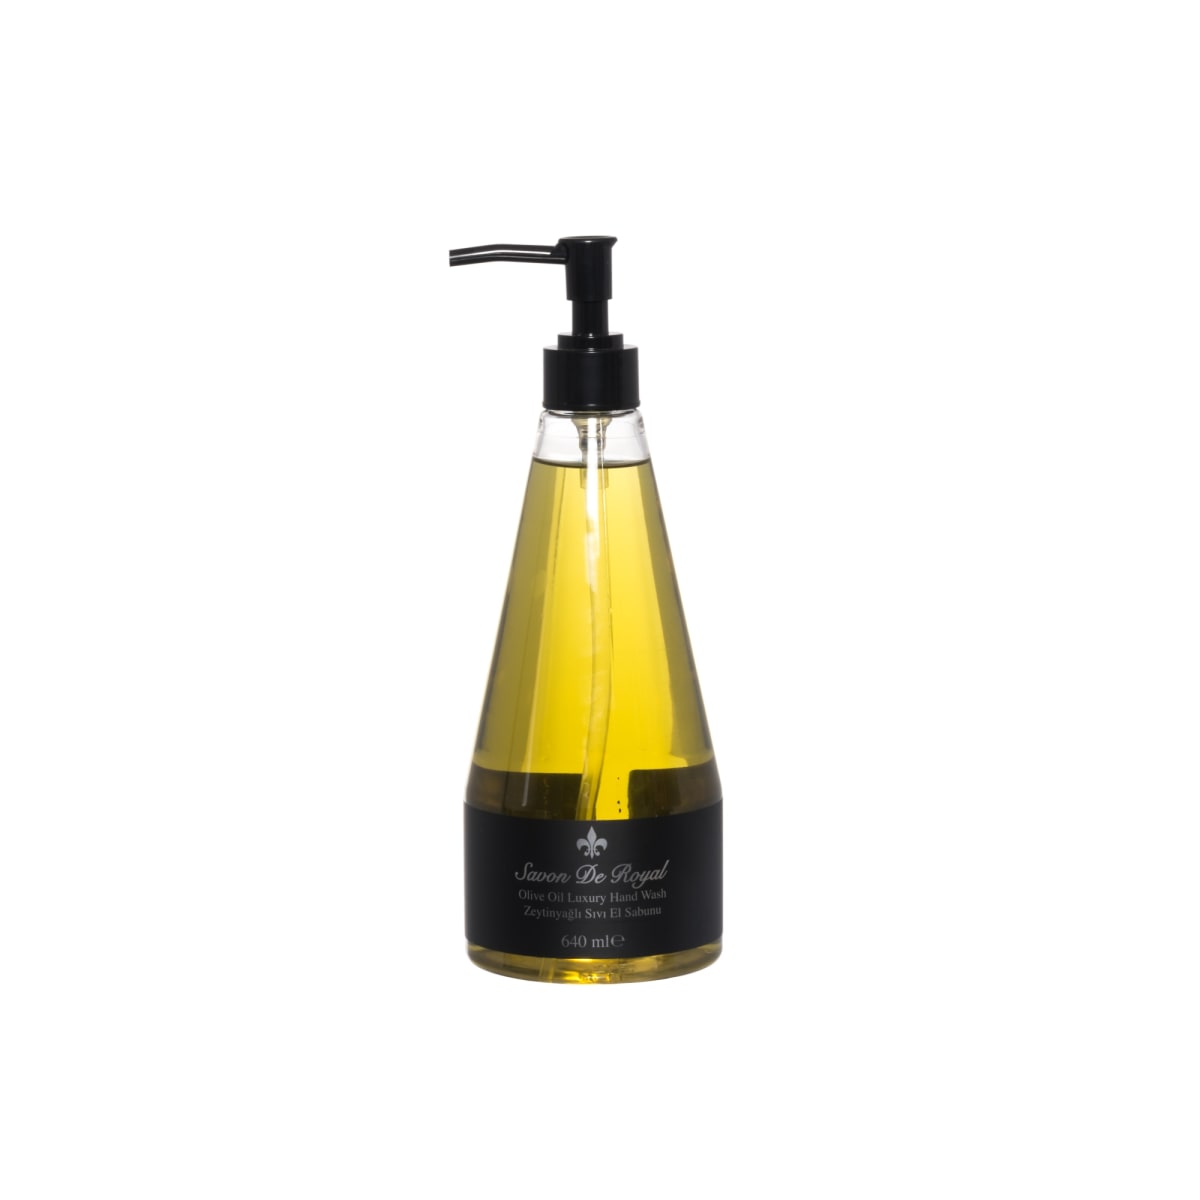 Savon de Royal Olive Oil 640 ml nestesaippua  verkkokauppa